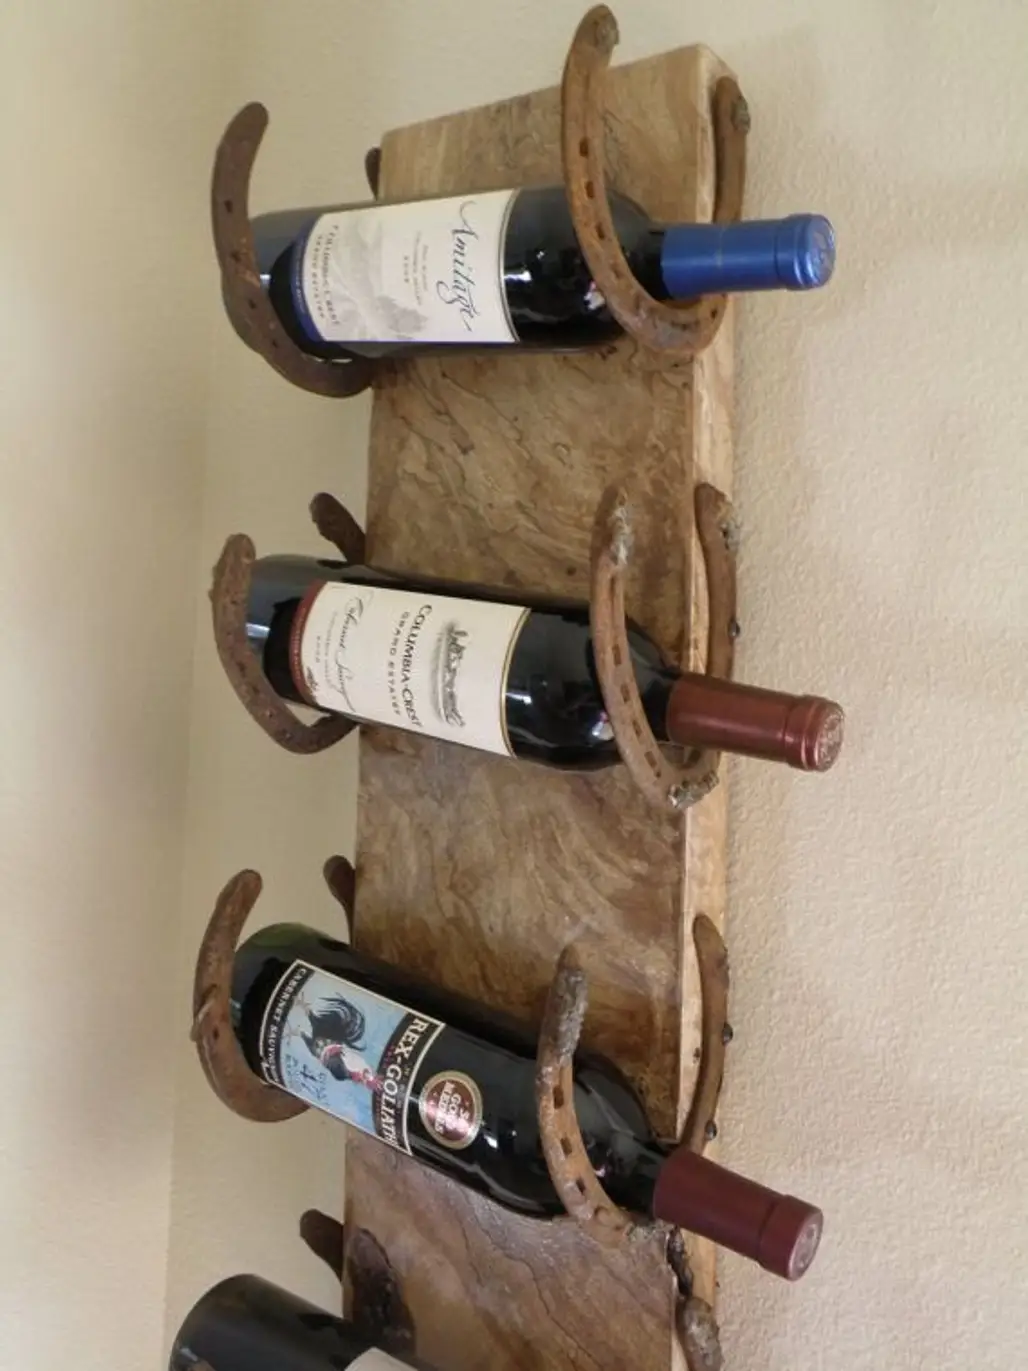 man made object,weapon,product,wine bottle,longboard,